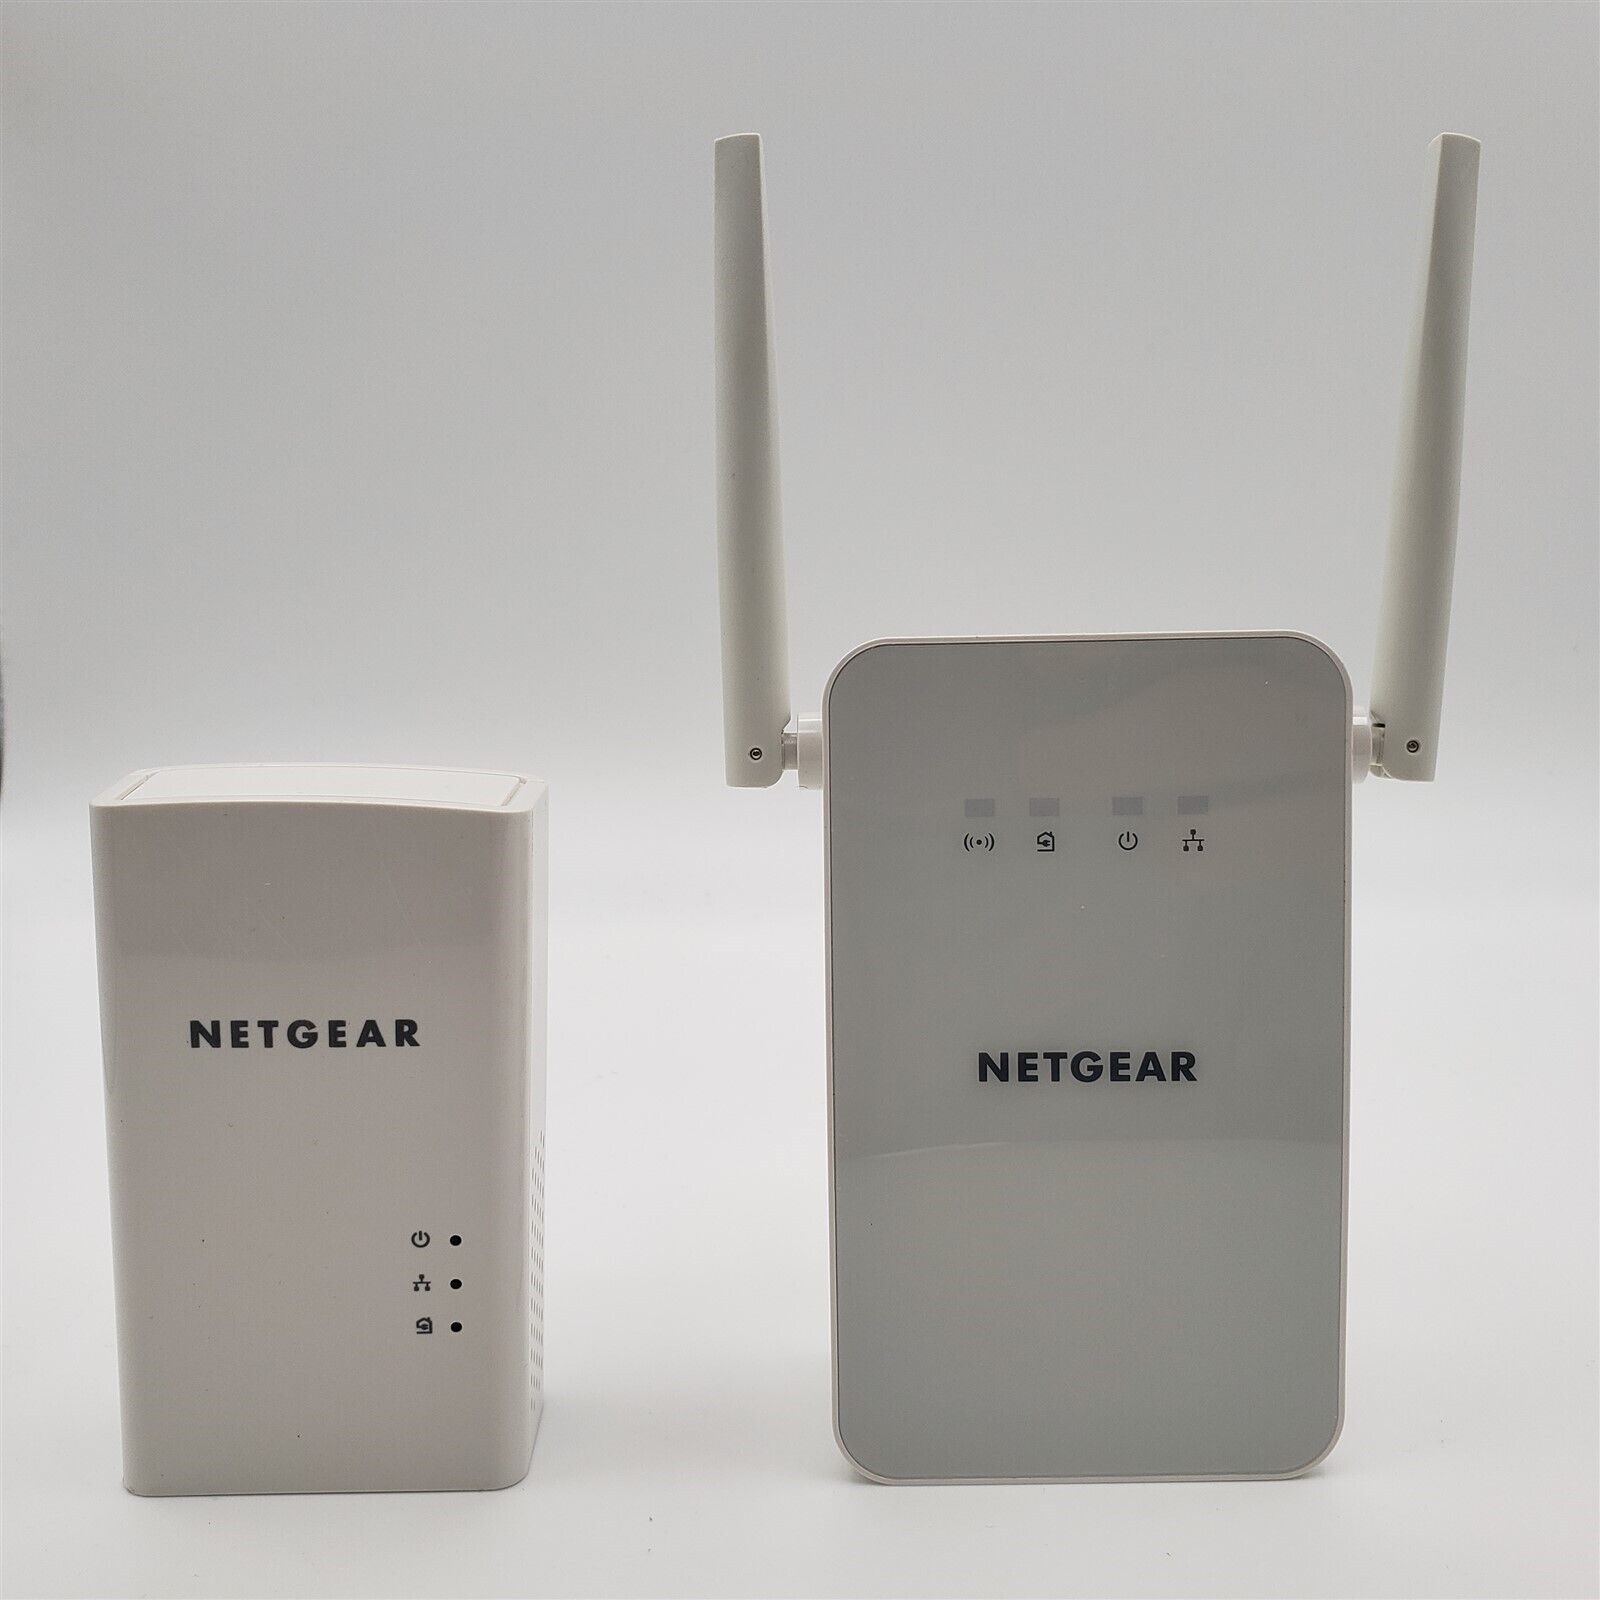 NETGEAR Powerline 1000 Mbps WiFi, 802.11ac, 1 Gigabit Port (PLW1000-100NAS)